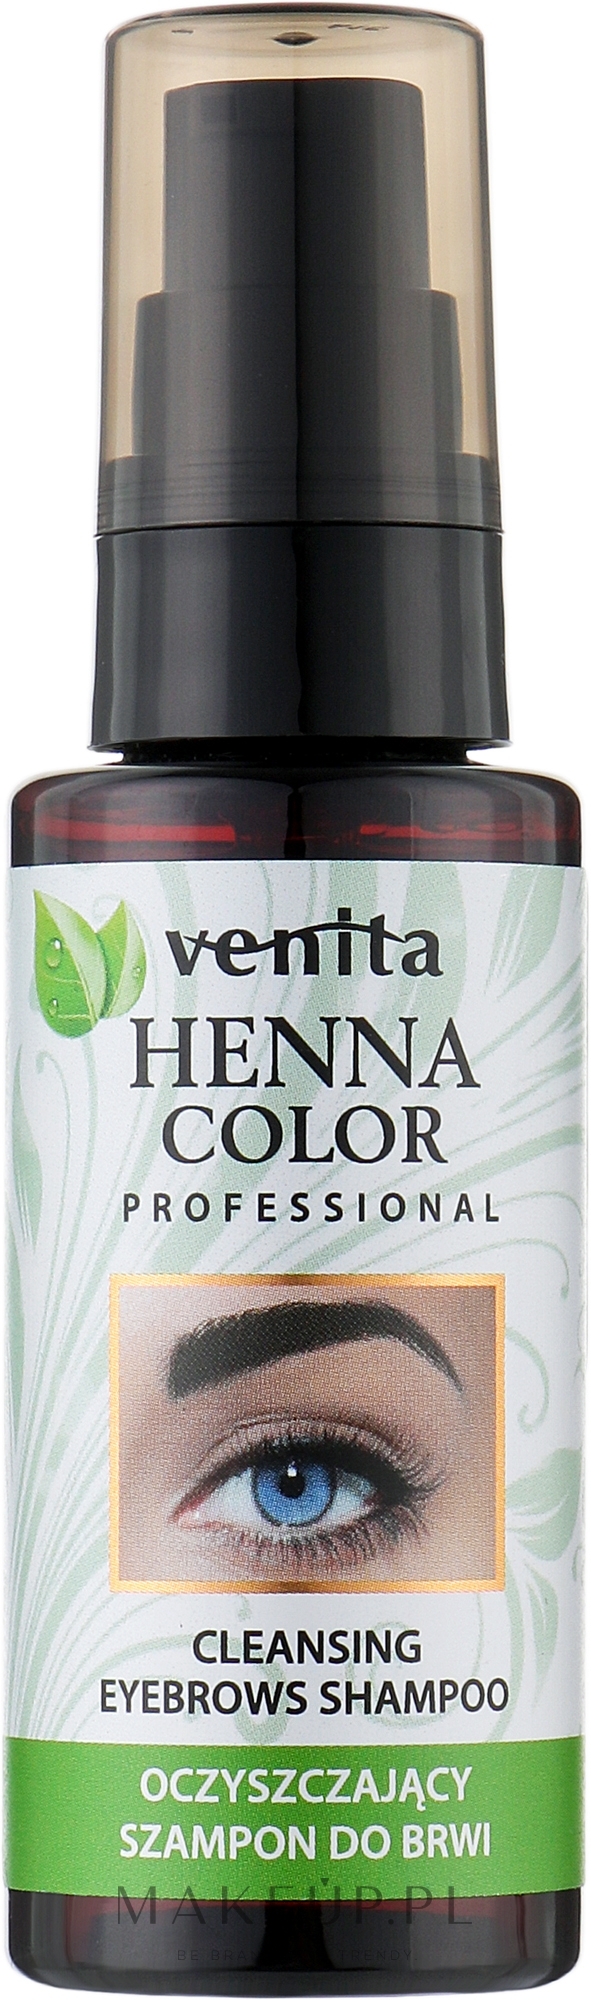 Oczyszczający szampon do brwi - Venita Eyebrow Shampoo — Zdjęcie 50 ml